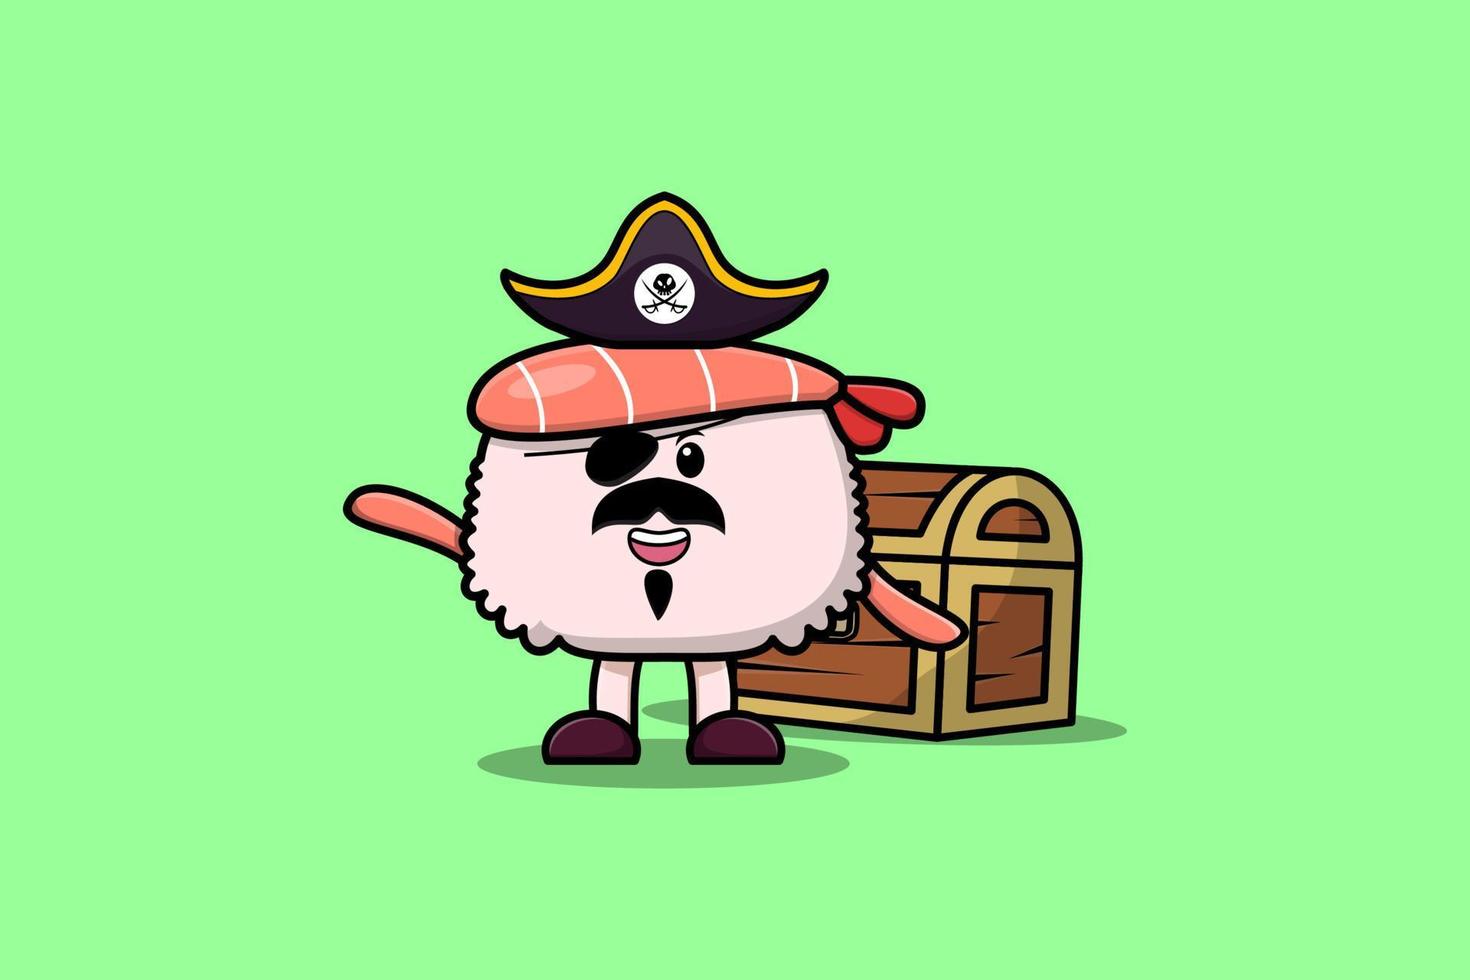 süßer Cartoon-Sushi-Garnelen-Pirat mit Schatzkiste vektor